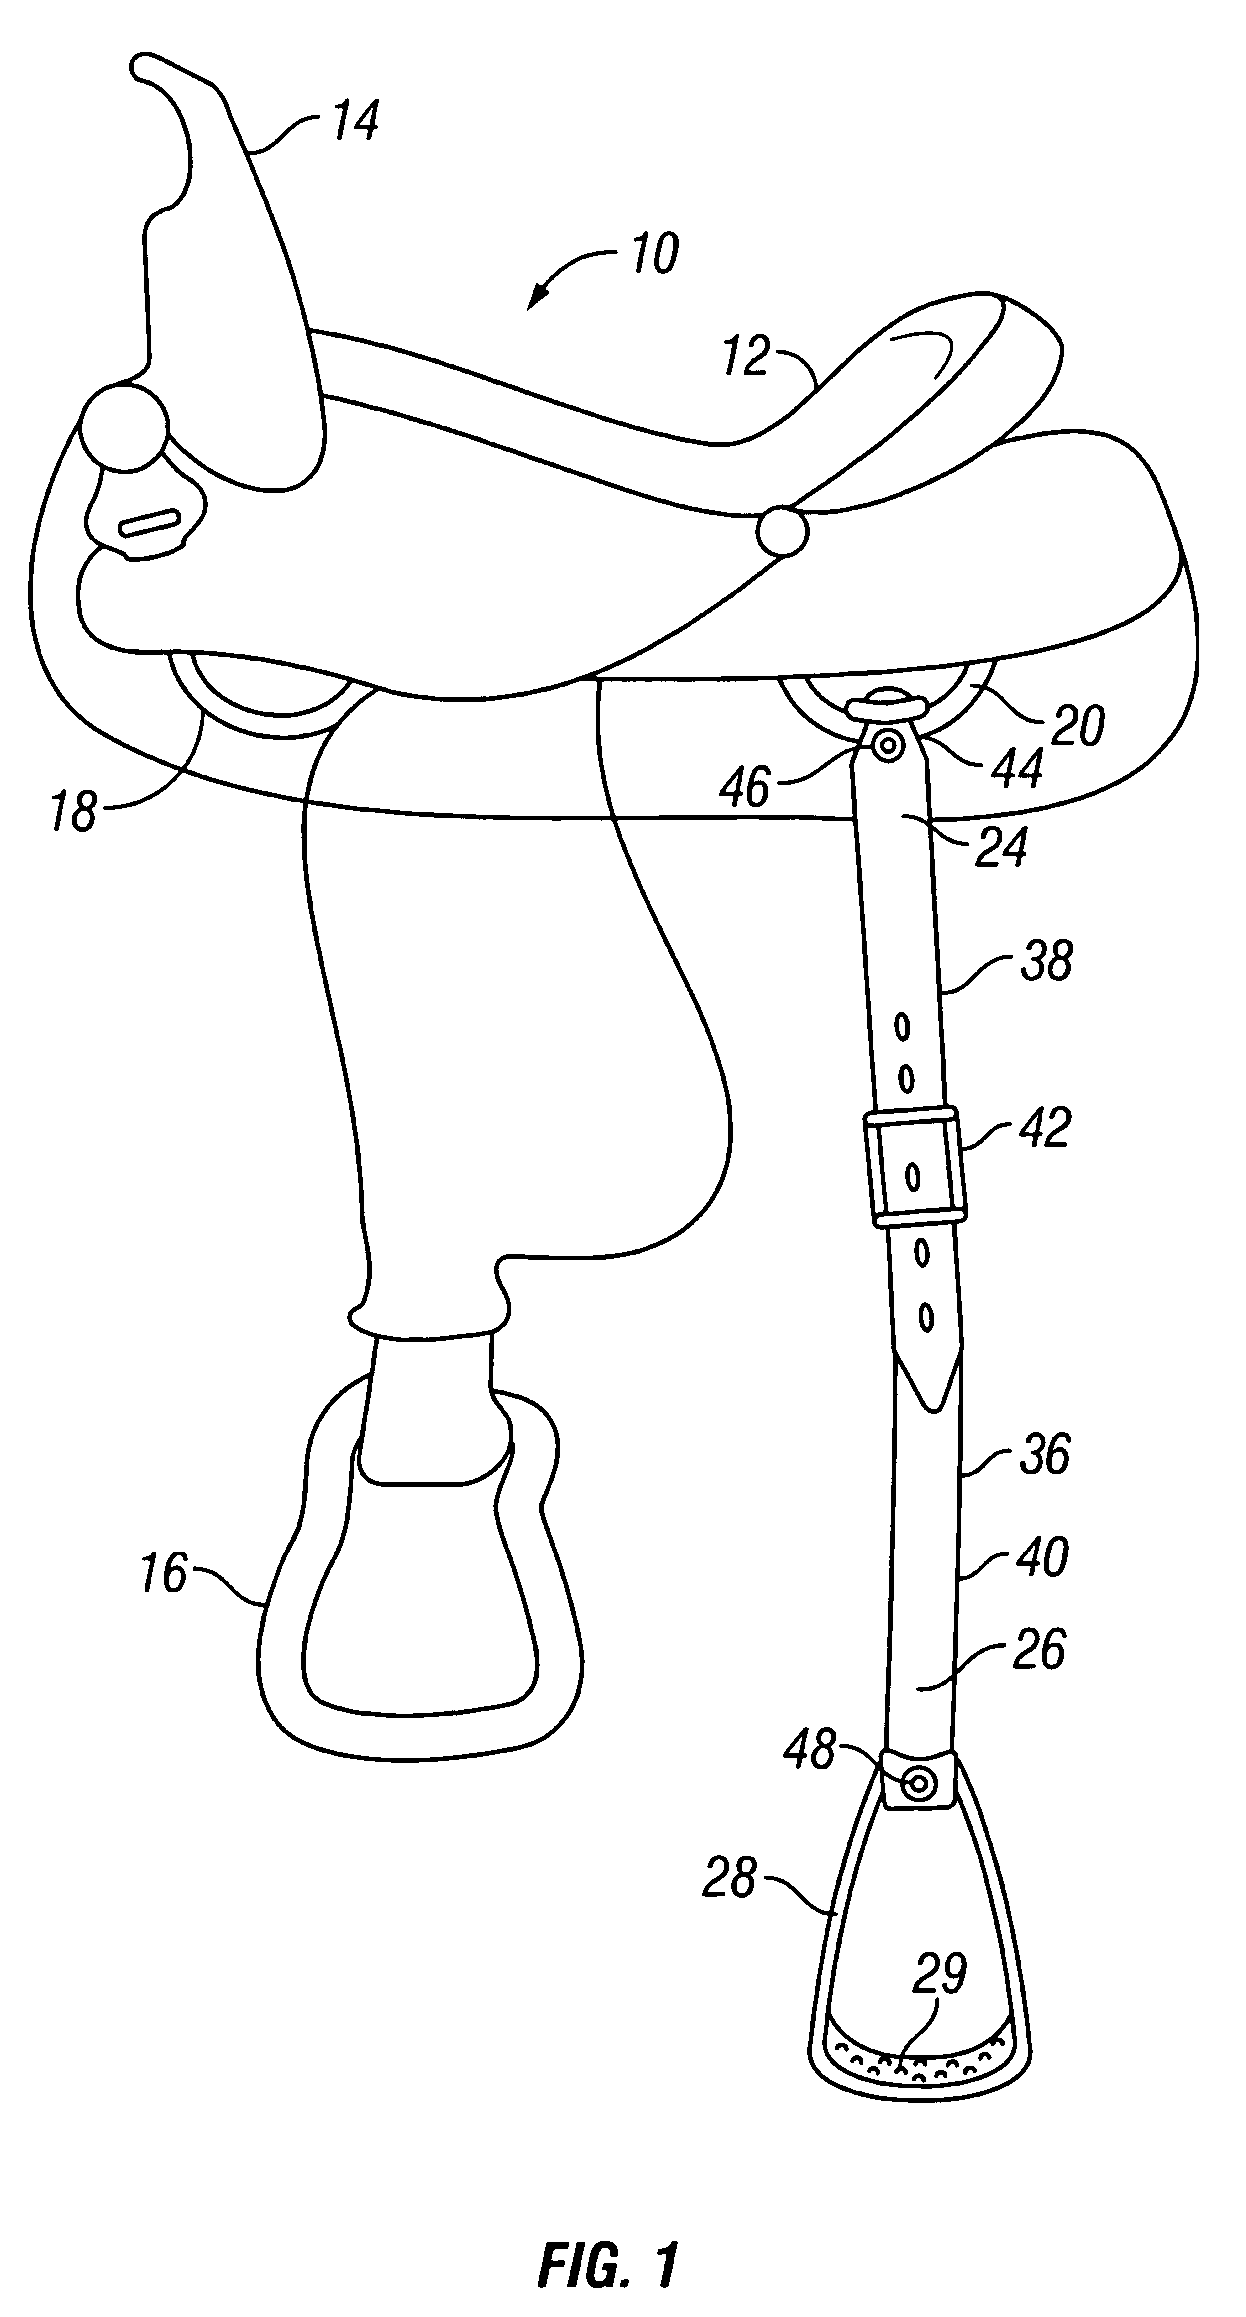 Auxiliary stirrup for saddle